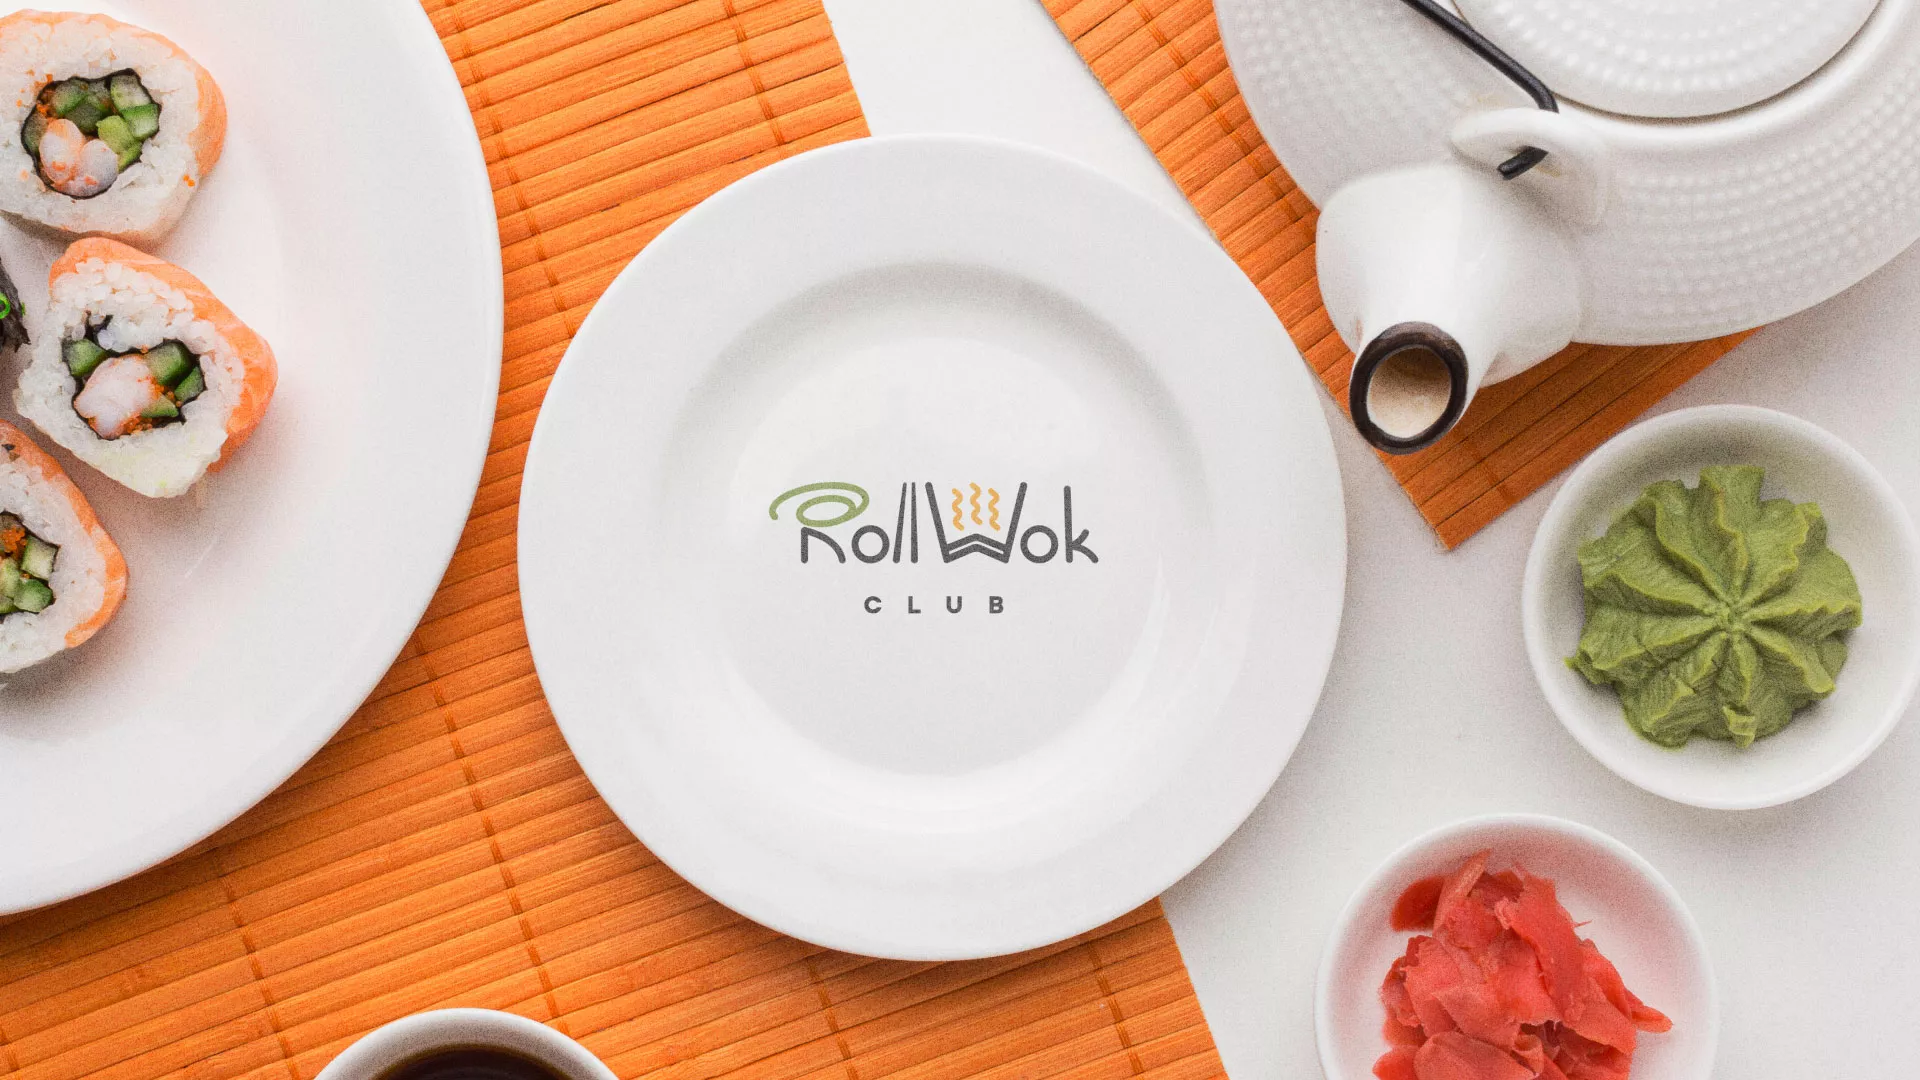 Разработка логотипа и фирменного стиля суши-бара «Roll Wok Club» в Жуковке